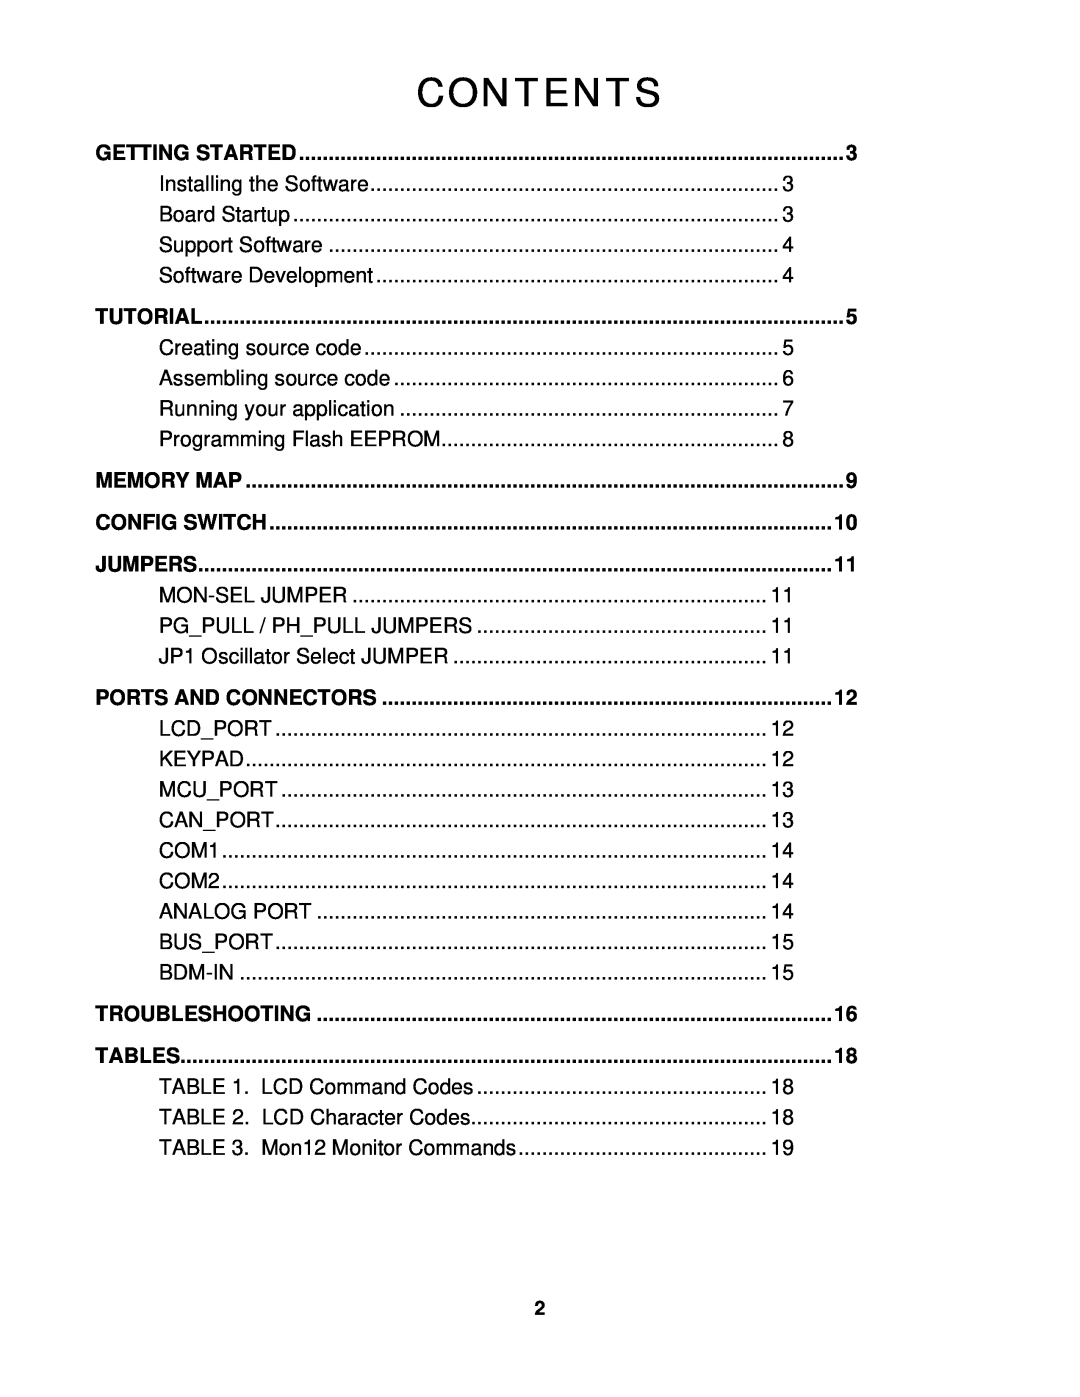 Motorola CME-12D60 manual Contents, Jumpers, Tables 